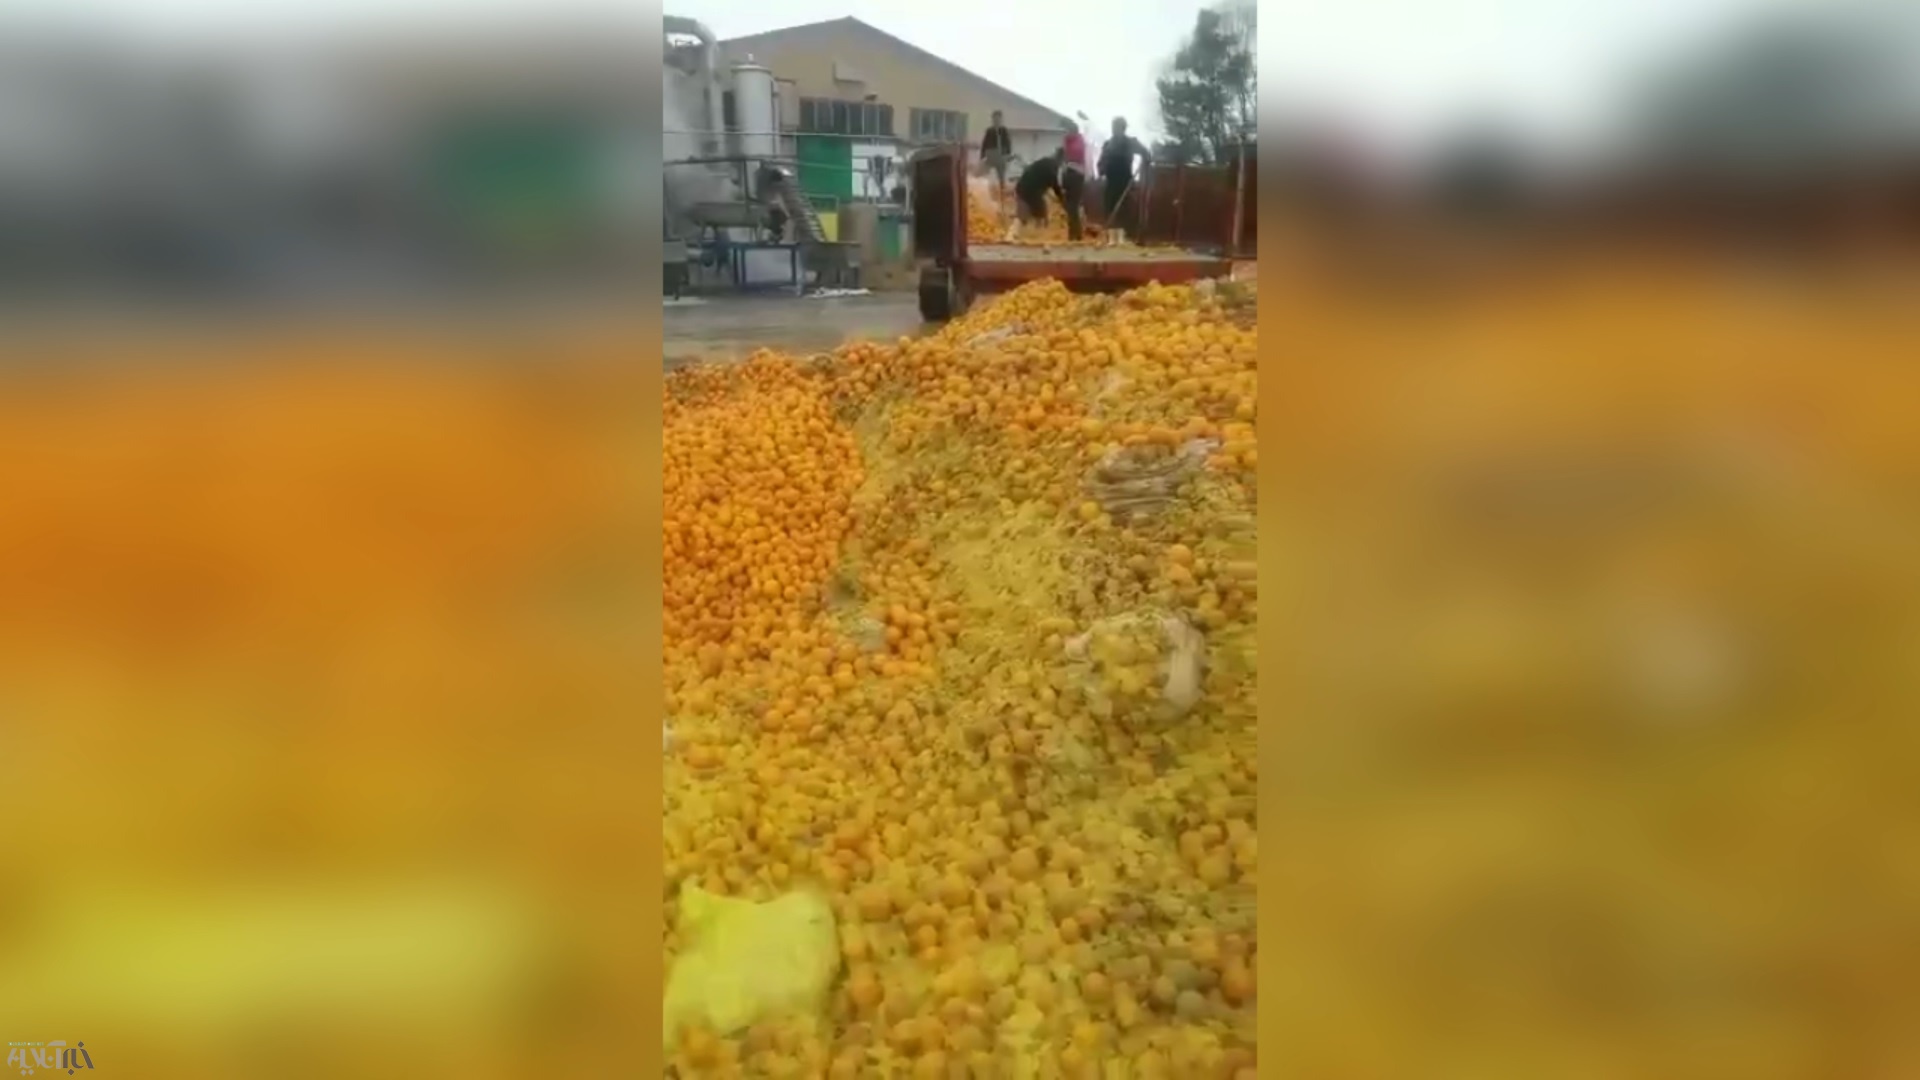 فیلم | فاجعه بهداشتی در یک کارخانه تولید آب پرتقال طبیعی!